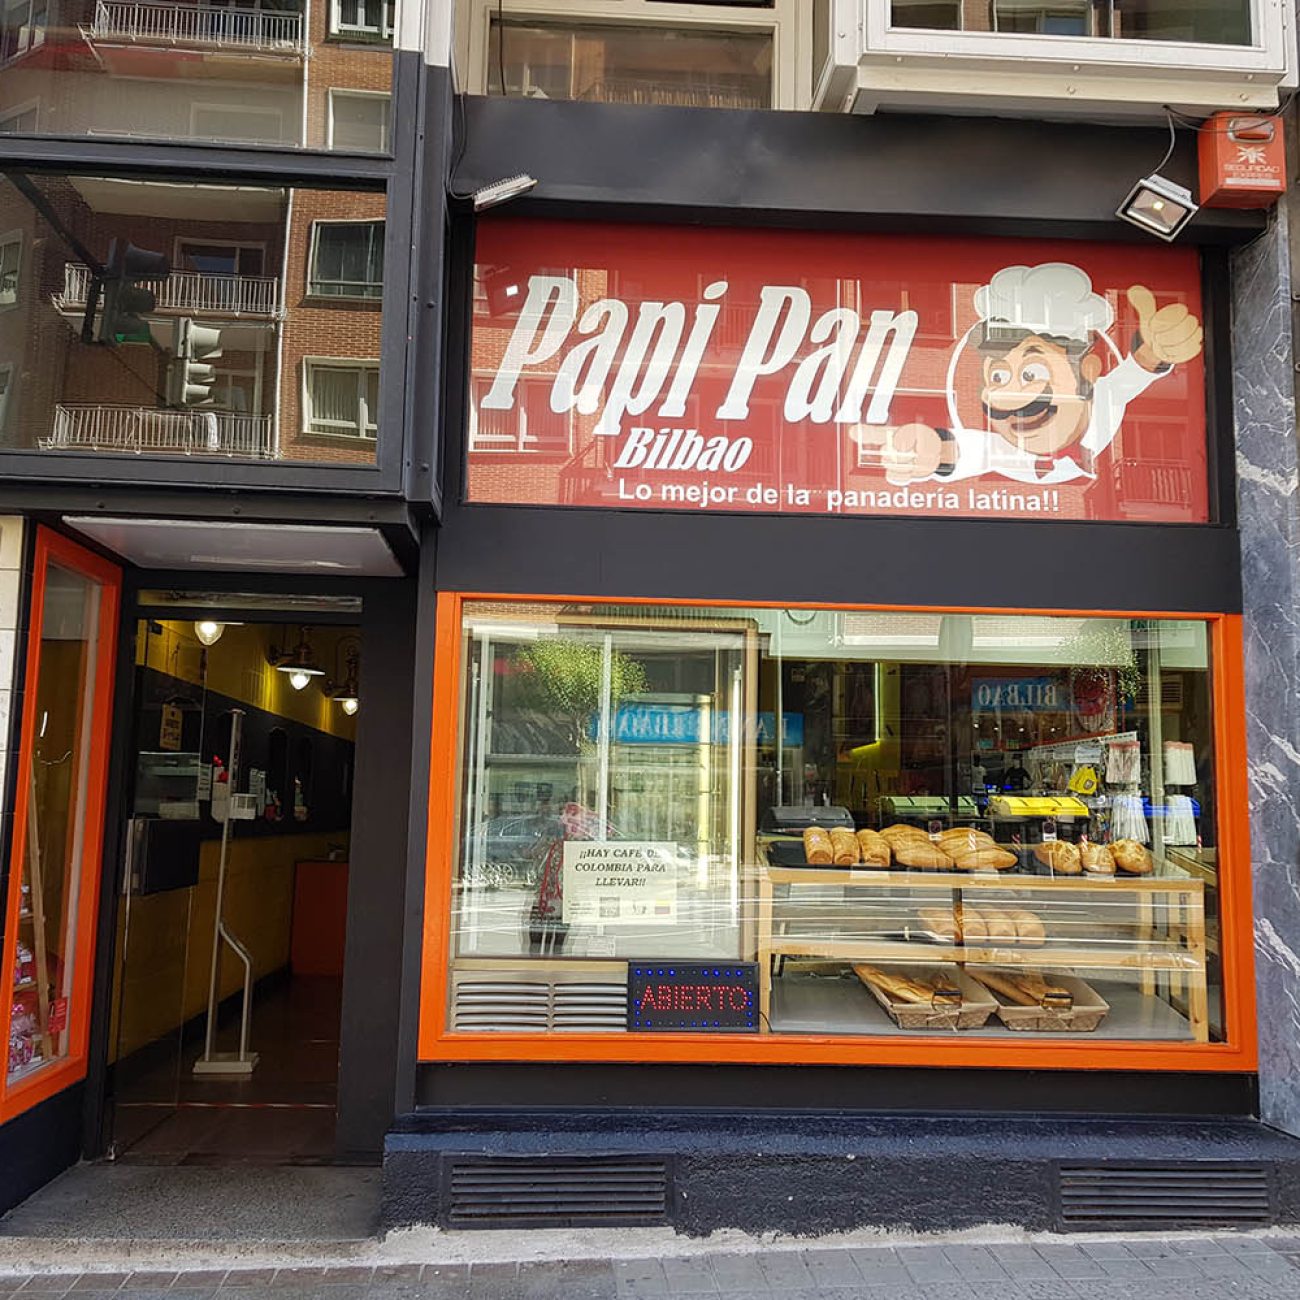 Papi pan, panadería confitería en Bilbao